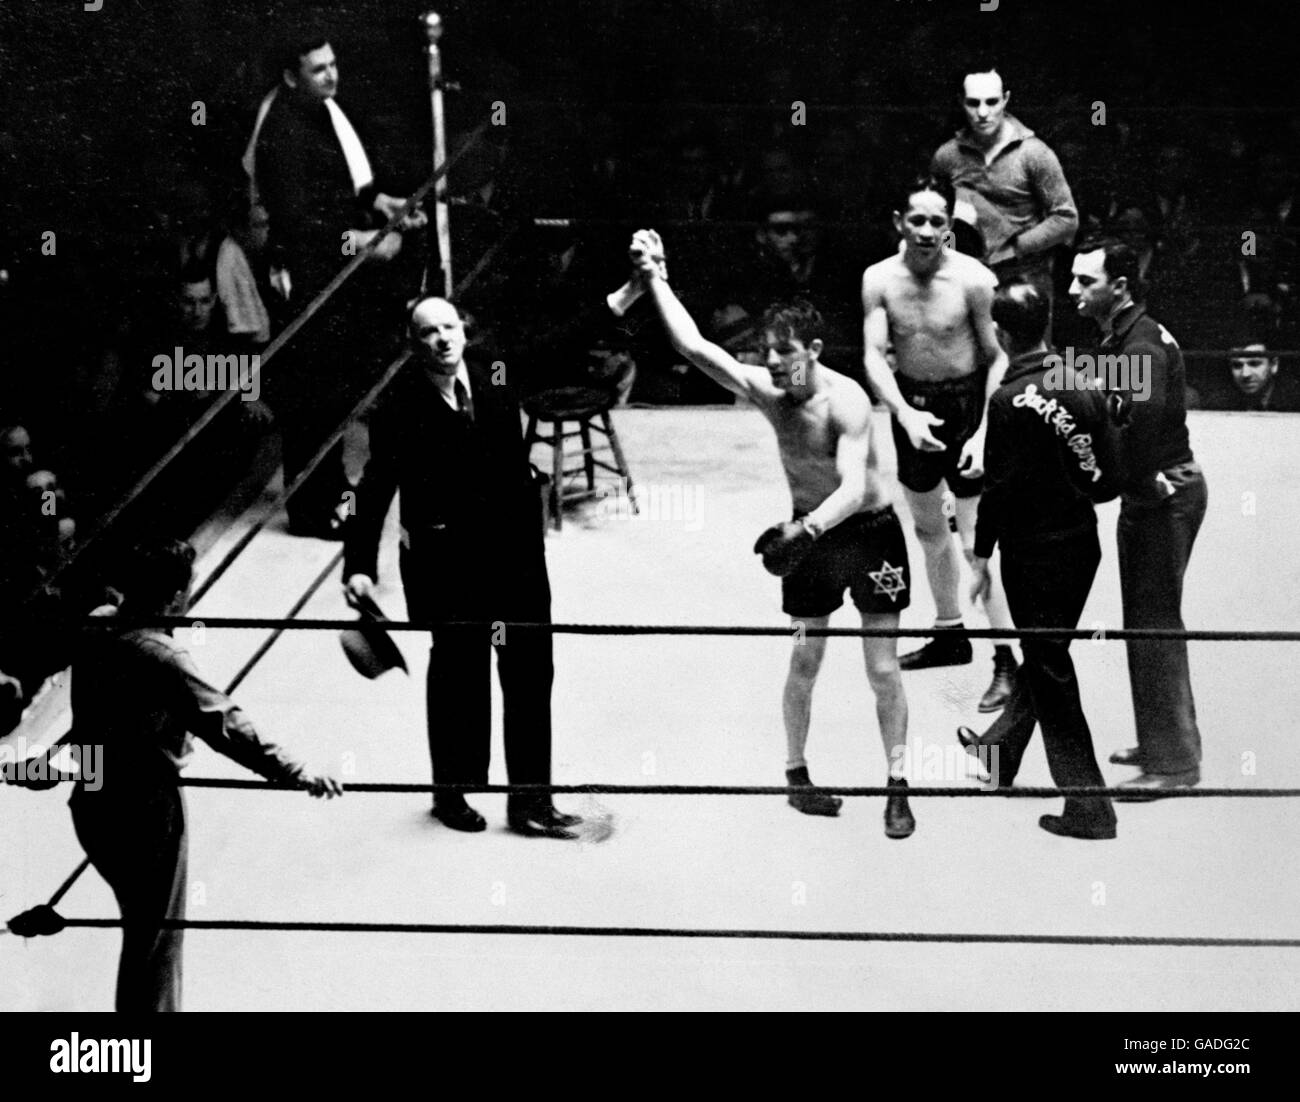 Ansager Joe Humphries hebt die Hand des Siegers, des britischen Boxers Jack 'Kid' Berg, alias 'The Whitechapel Whirlwind', der den amerikanischen Boxer Tony Herrera, alias 'The Symphony in Leather', schlug. Der Kampf fand im Mai 1931 in den Madison Square Gardens statt. Stockfoto